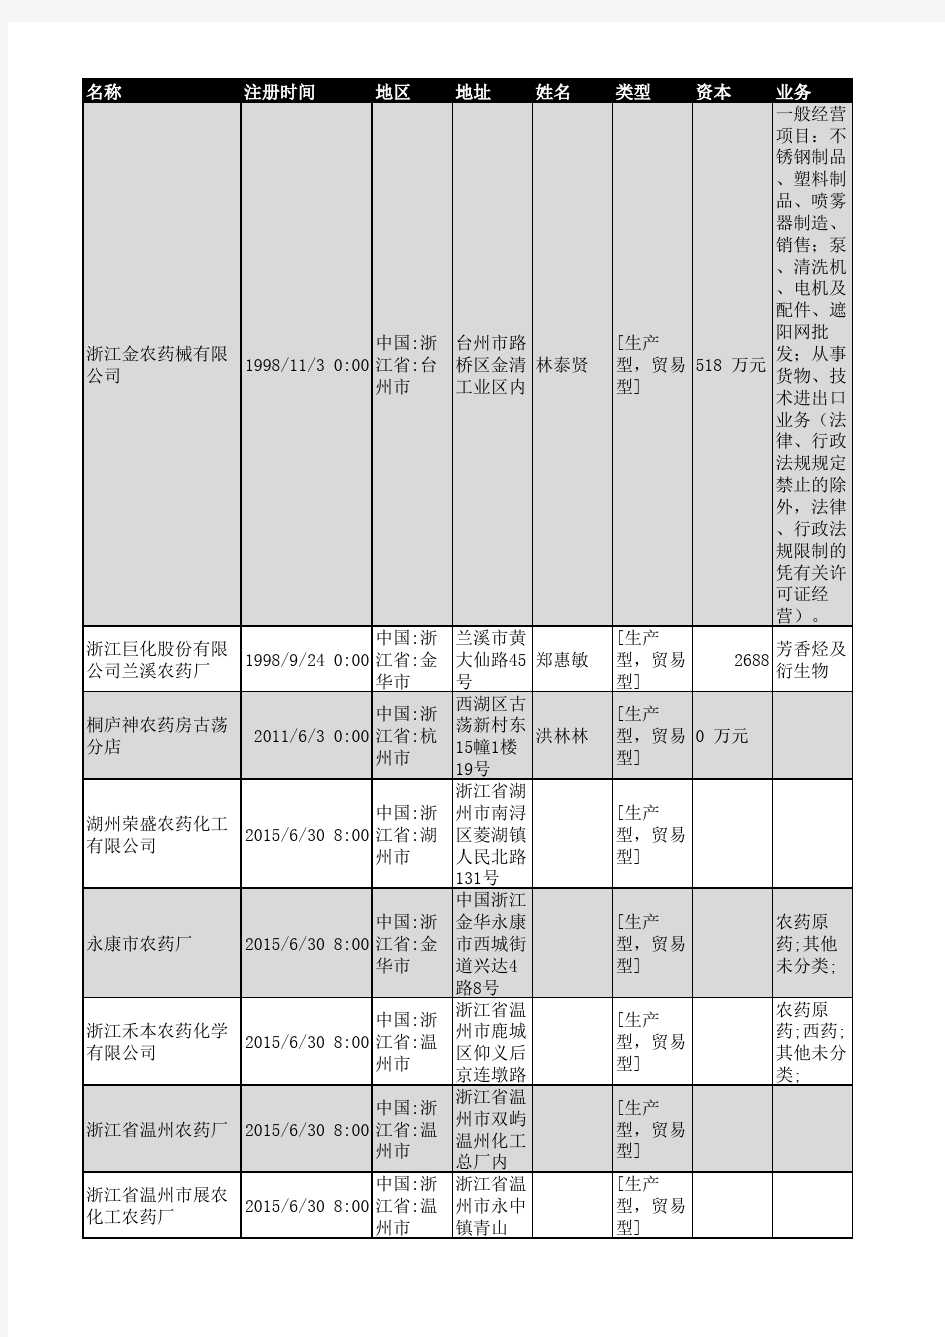 2018年浙江省农药行业企业名录2286家